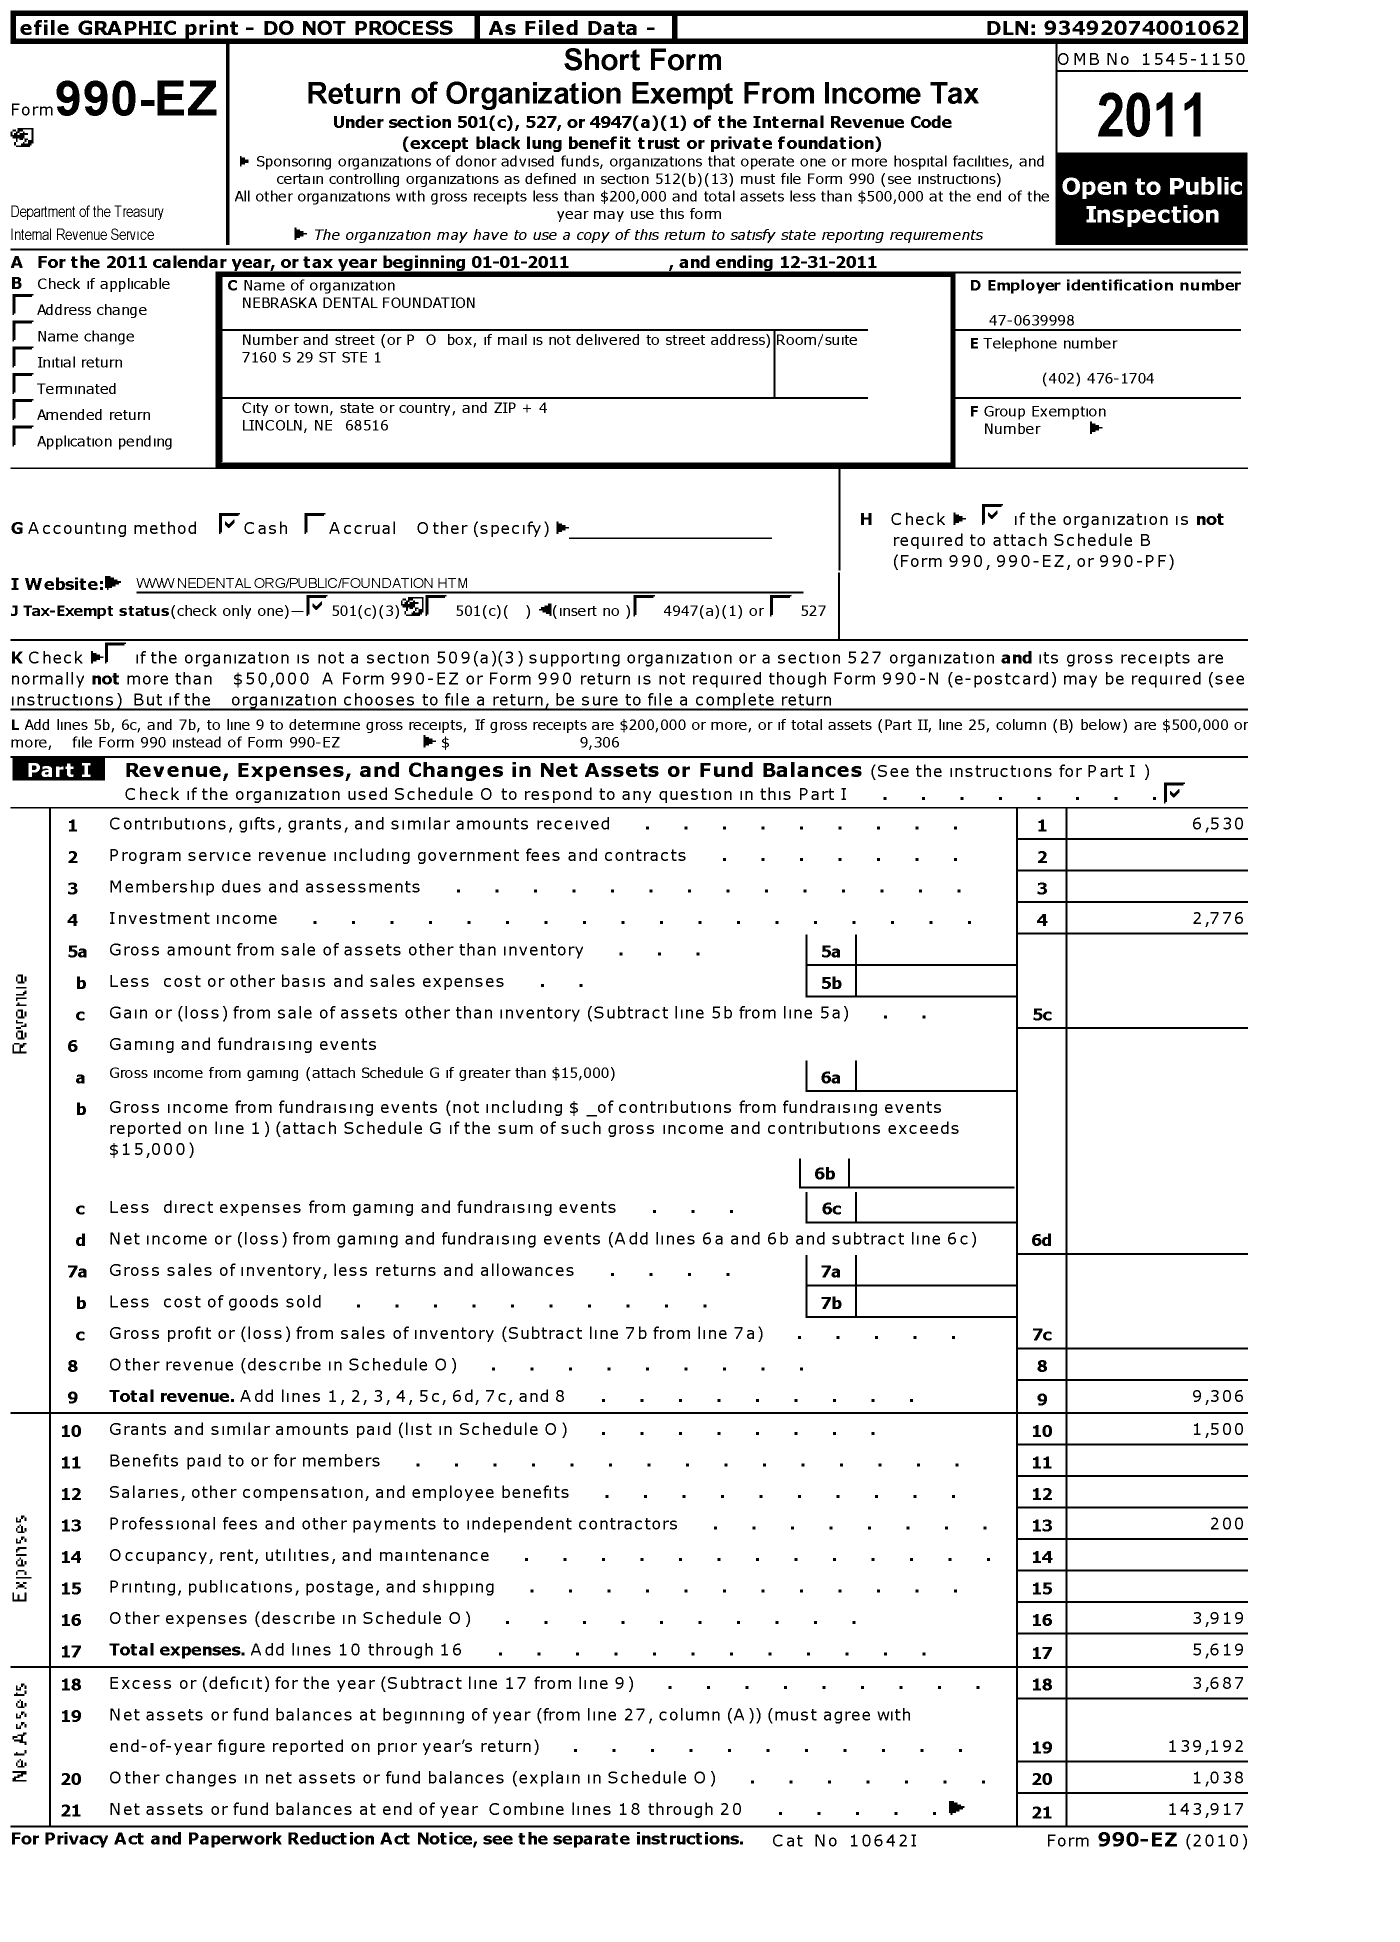 Image of first page of 2011 Form 990EZ for Nebraska Dental Foundation